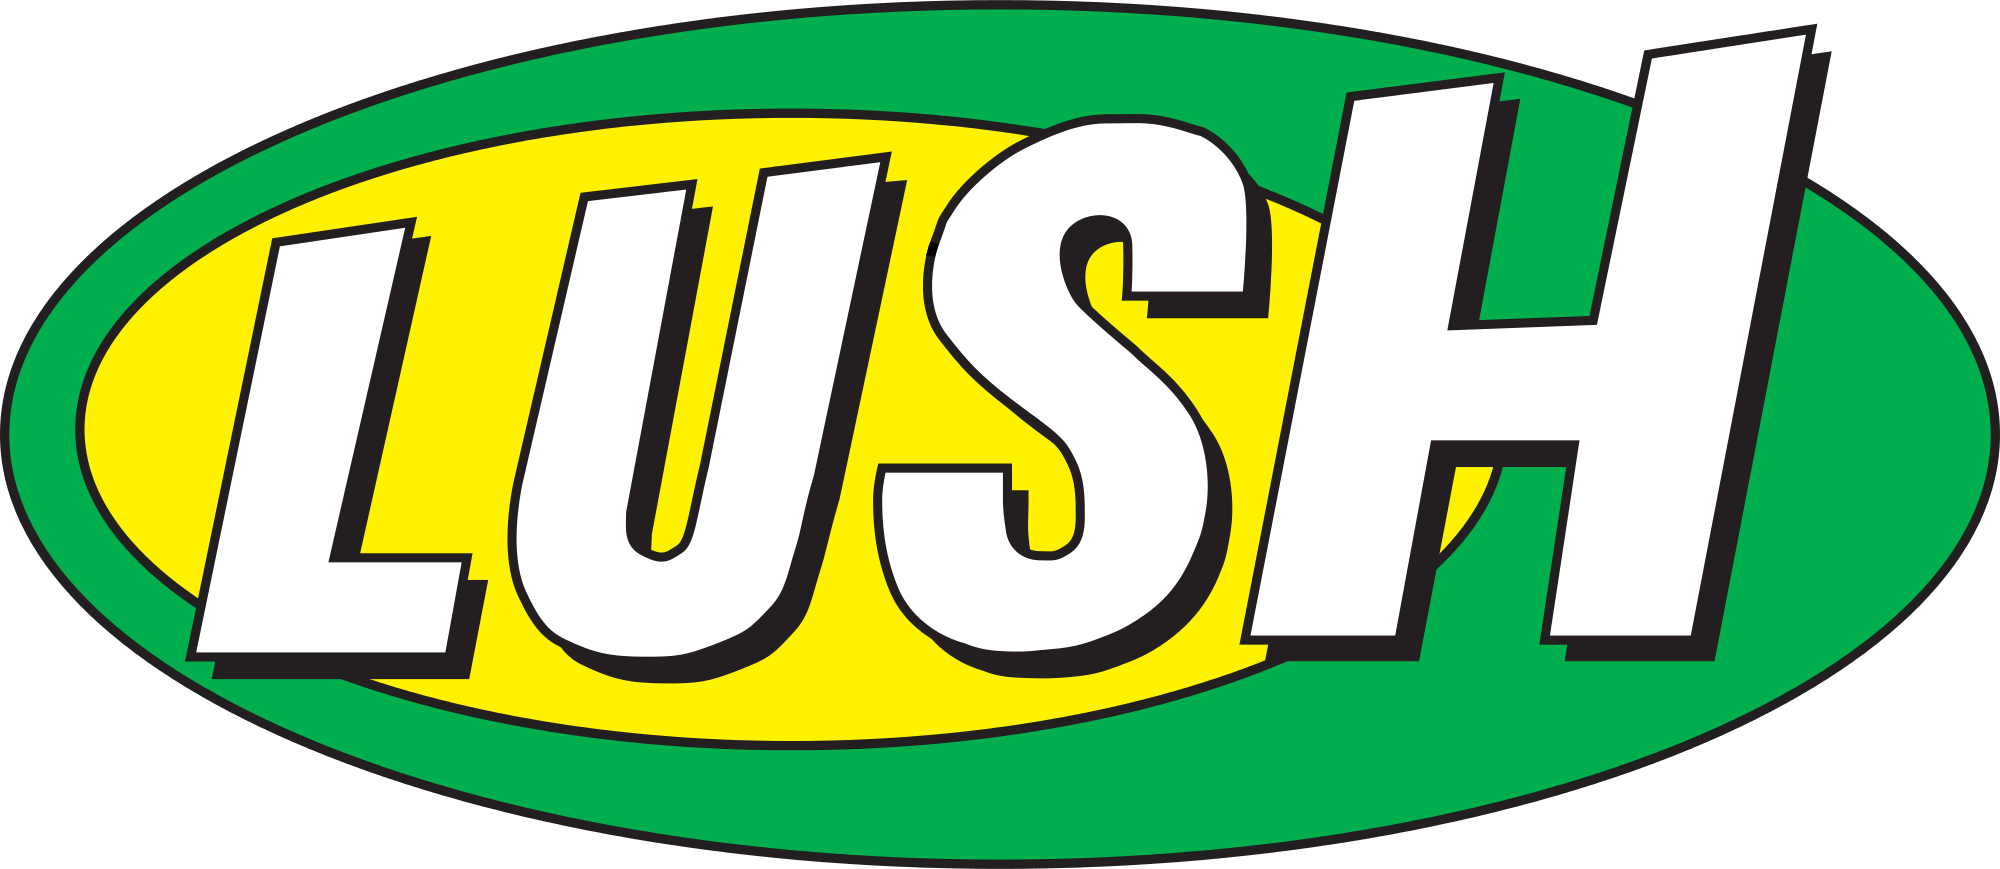 Lushusa.com